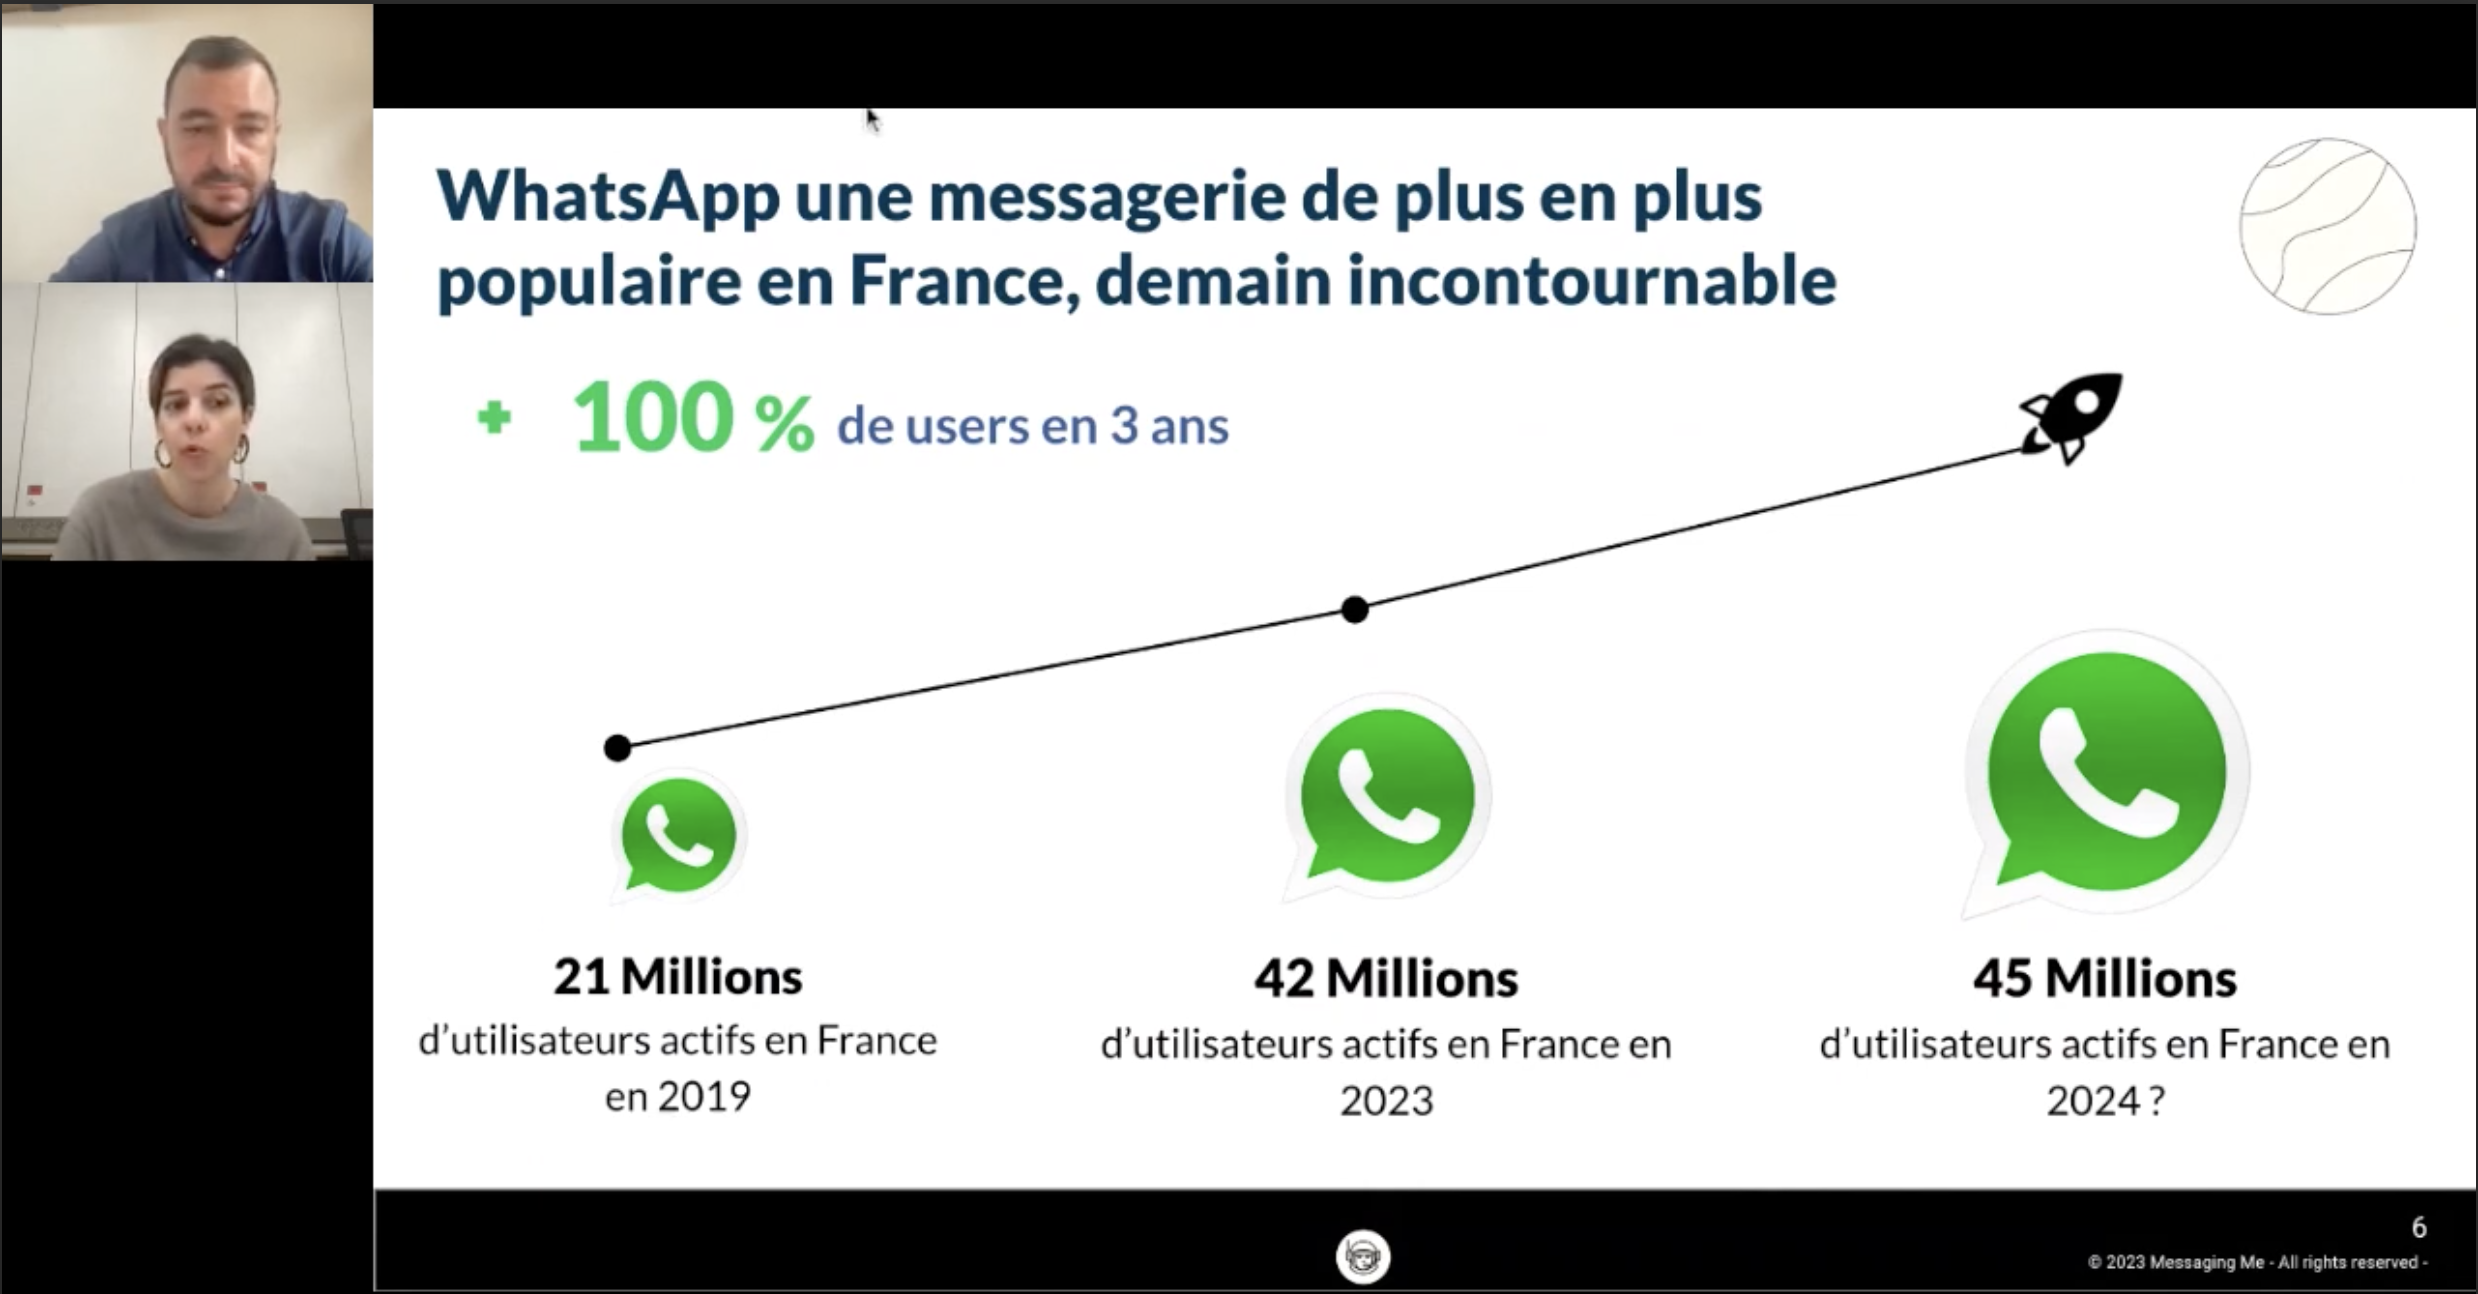 Whatsapp: Le futur de la communication client pour les marques